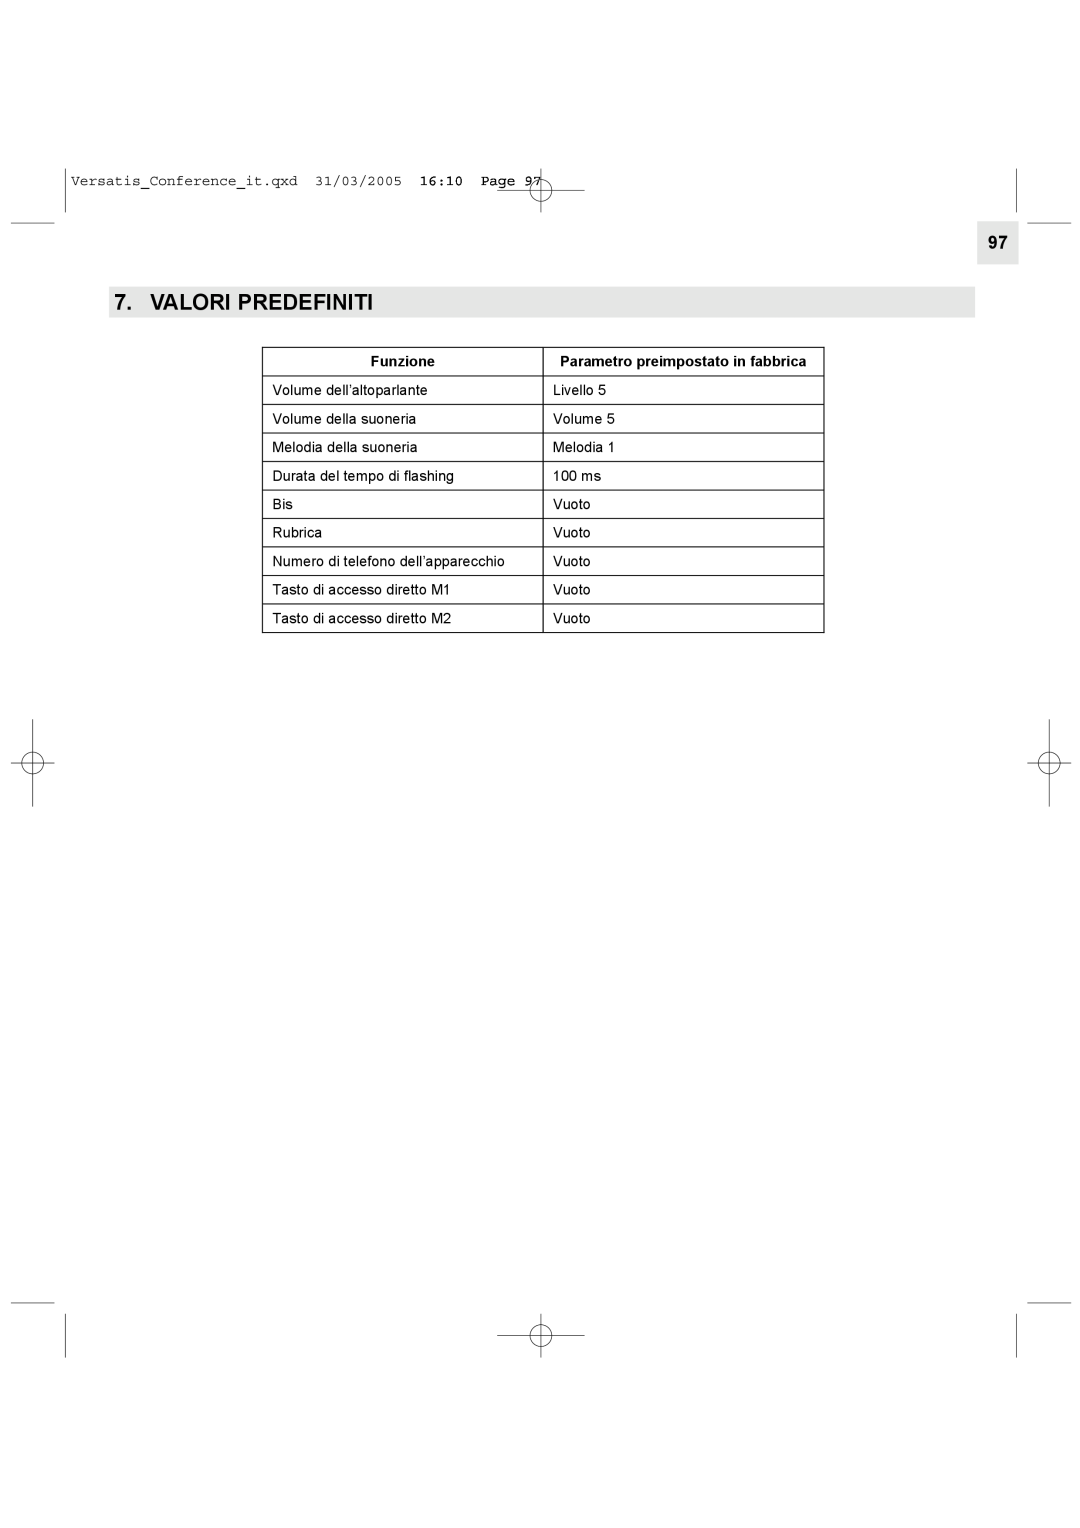 Alcatel Carrier Internetworking Solutions Conference Phone manual Valori Predefiniti, Funzione 